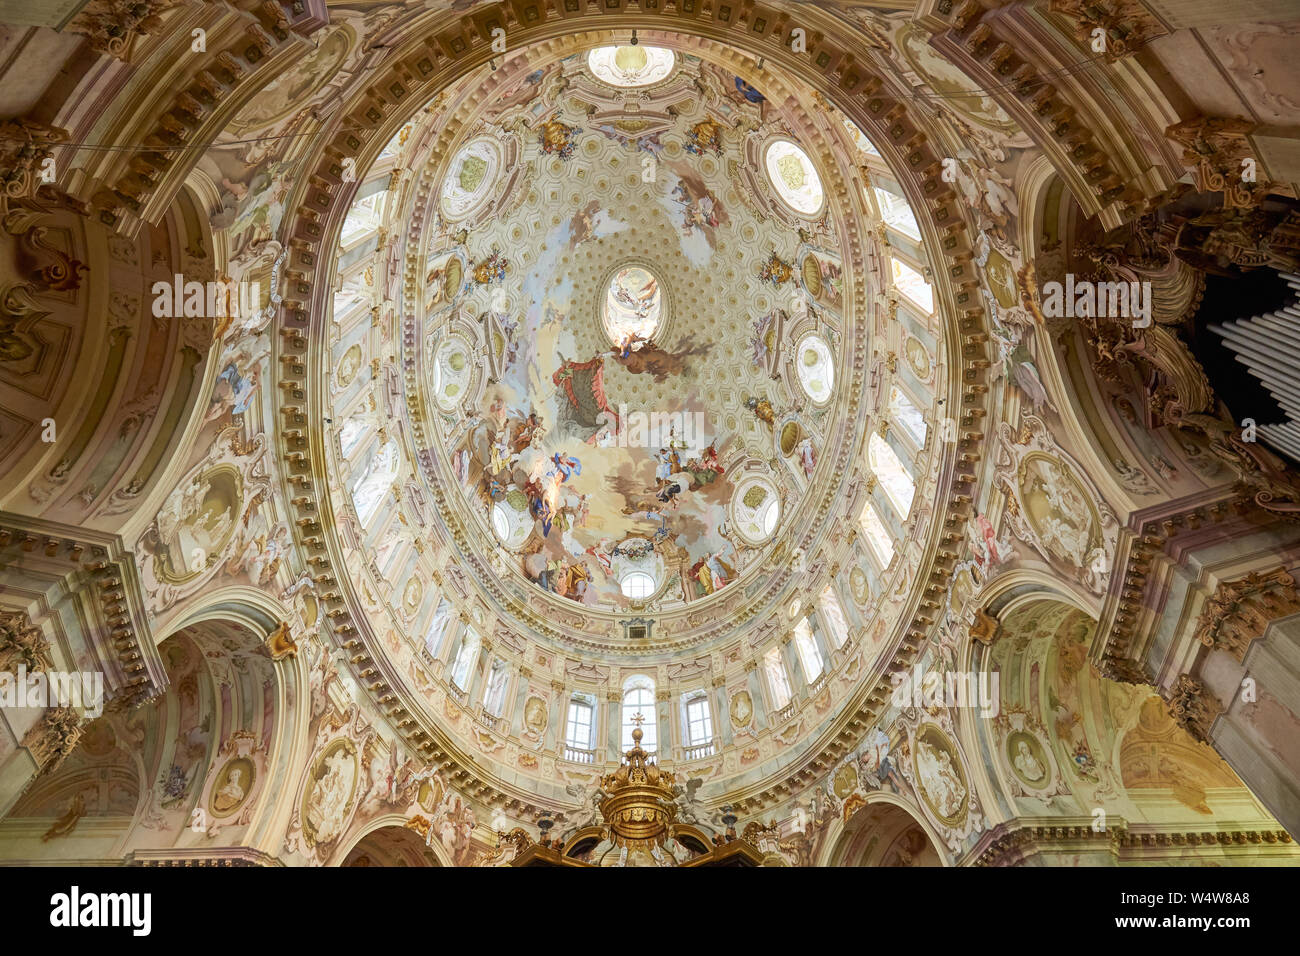 Vicoforte, Italie - 17 août 2016 : Sanctuaire de Vicoforte dôme baroque elliptique avec des fresques et de colonnes, un grand angle dans le Piémont, Italie Banque D'Images